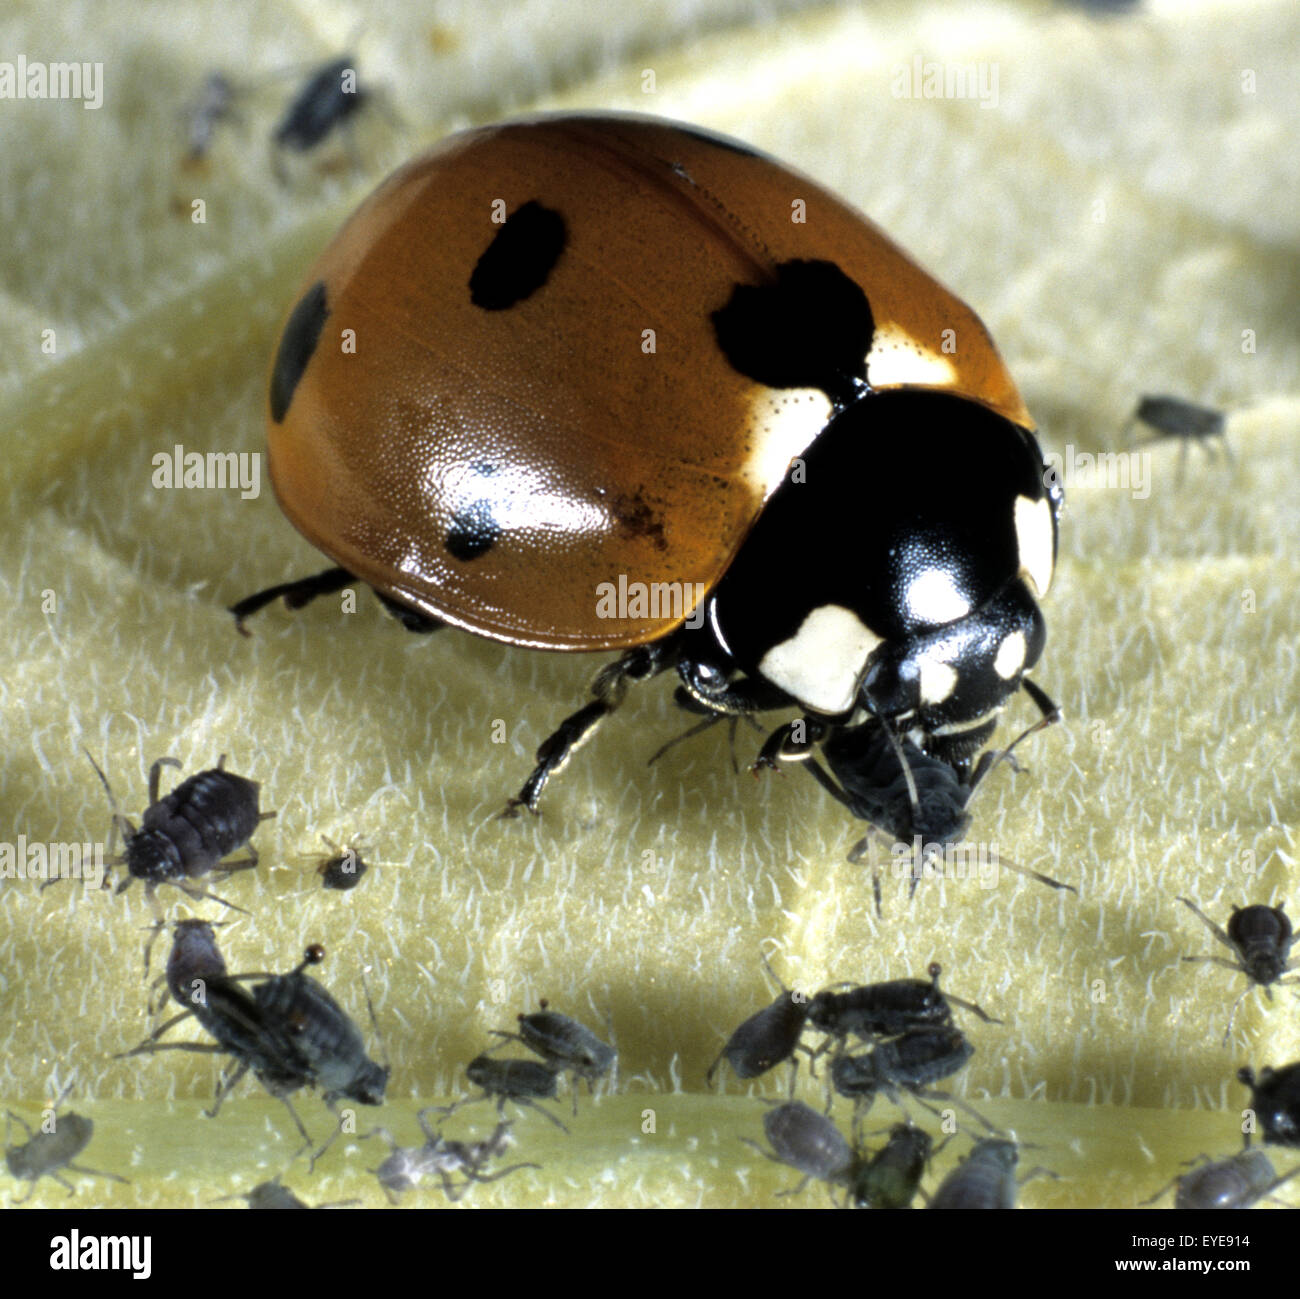 Coccinella septempunctata, Marienkäfer, Roter Käfer, beim Fressen von Blattläusen, Insekt Banque D'Images